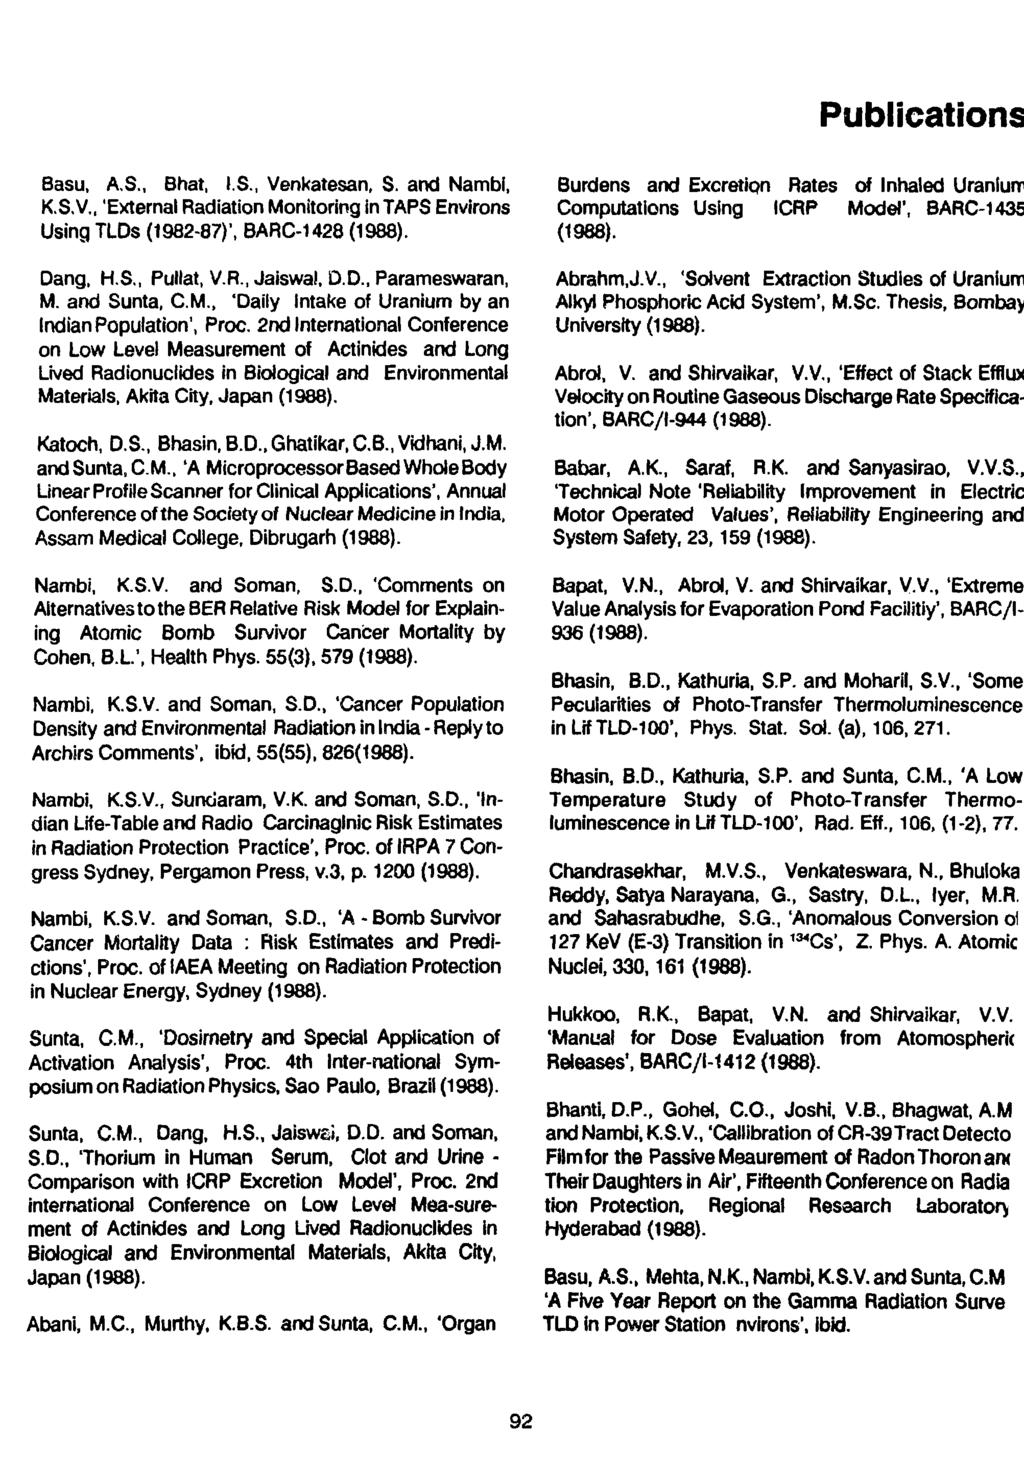 Publications Basu, A.S., Bhat, I.S., Venkatesan, S. and Nambi, K.S.V., 'External Radiation Monitoring in TAPS Environs Using TLDs (1982-87)', BARC-1428 Dang, H.S., Pullat, V.R., Jaiswal, D.D., Parameswaran, M.